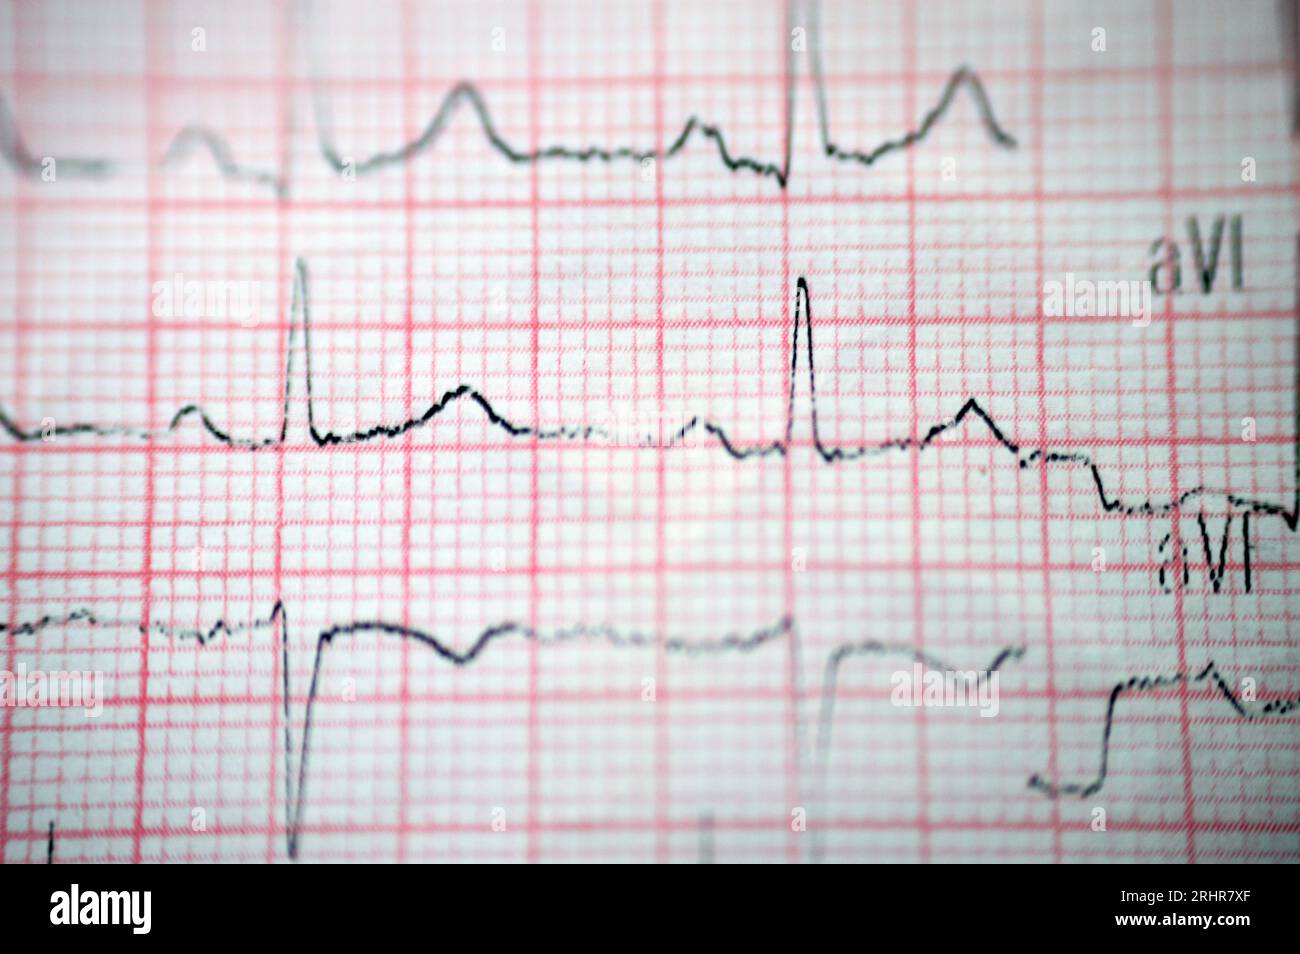 Un ECG elettrocardiografico, una cartella che estrae l'elettricità del cuore e fornisce un'idea delle condizioni cardiache e del ritmo, escludendo qualsiasi Foto Stock